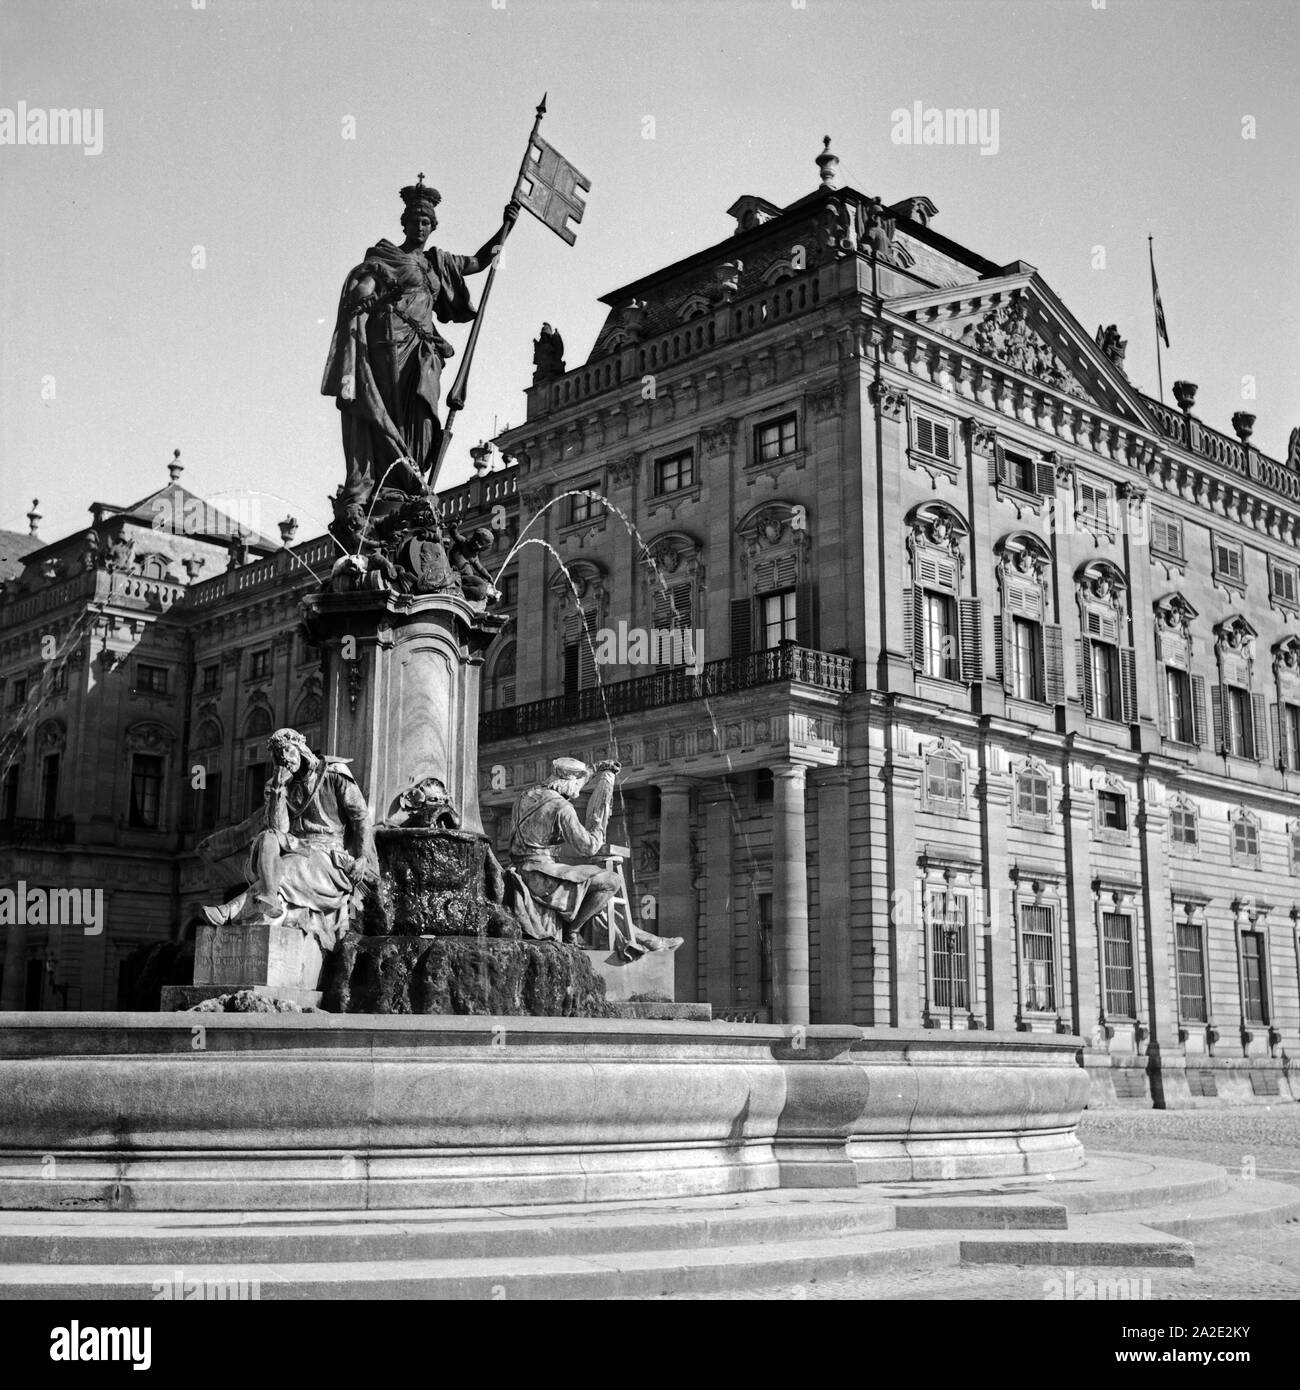 Brunnen vor der Residenz zu Würzburg, Deutschland 1930er Jahre. Fontana nella parte anteriore della Residenza di Würzburg, Germania 1930s. Foto Stock